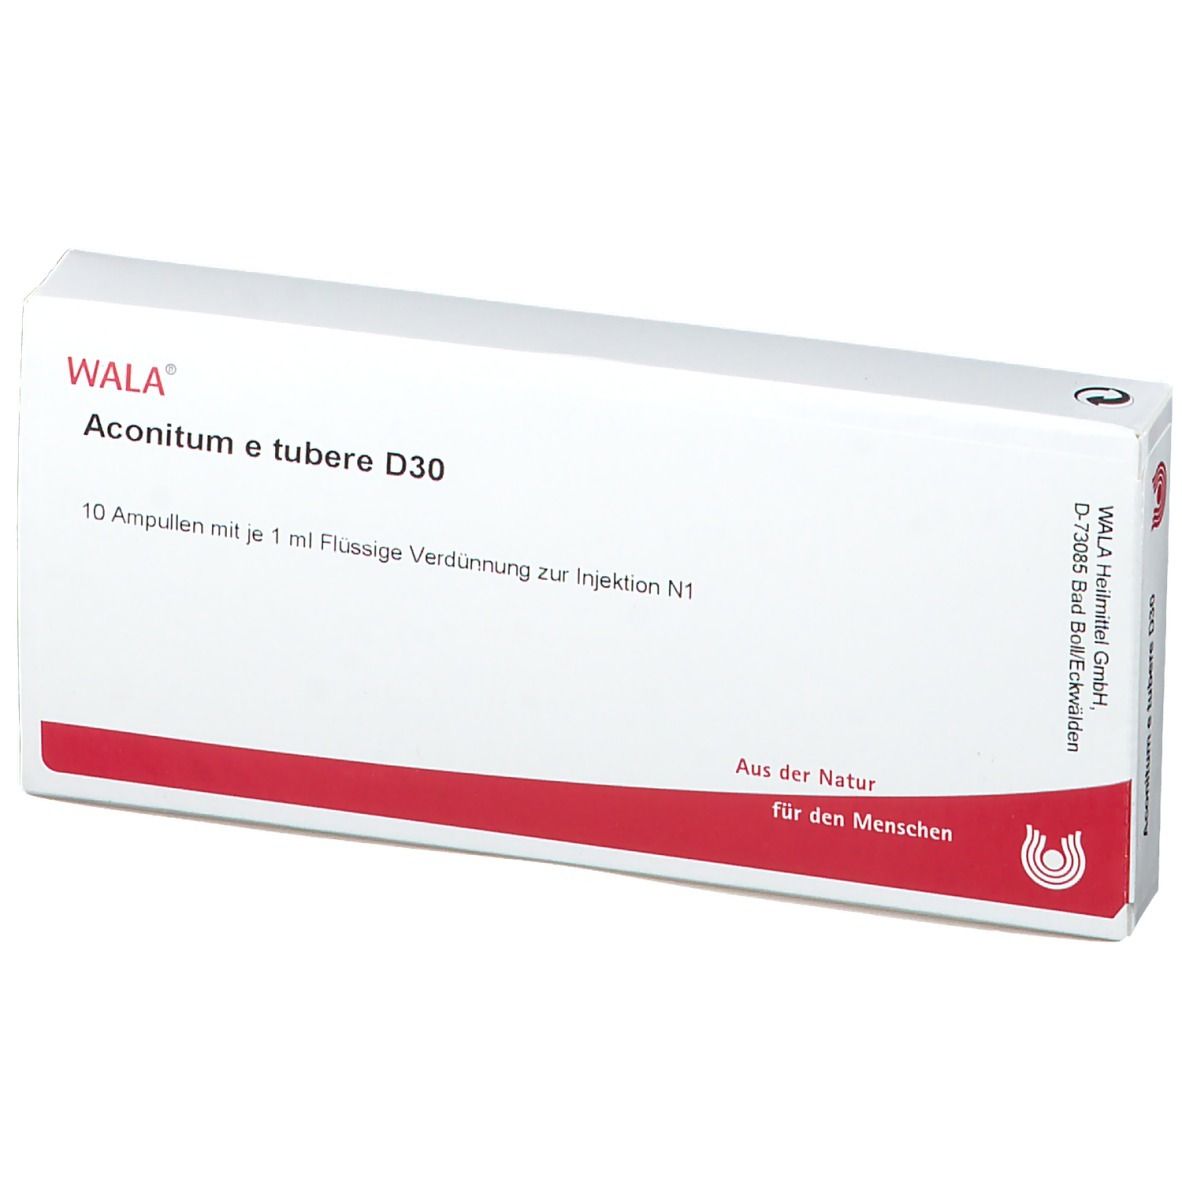 WALA® Aconitum e tubere D 30